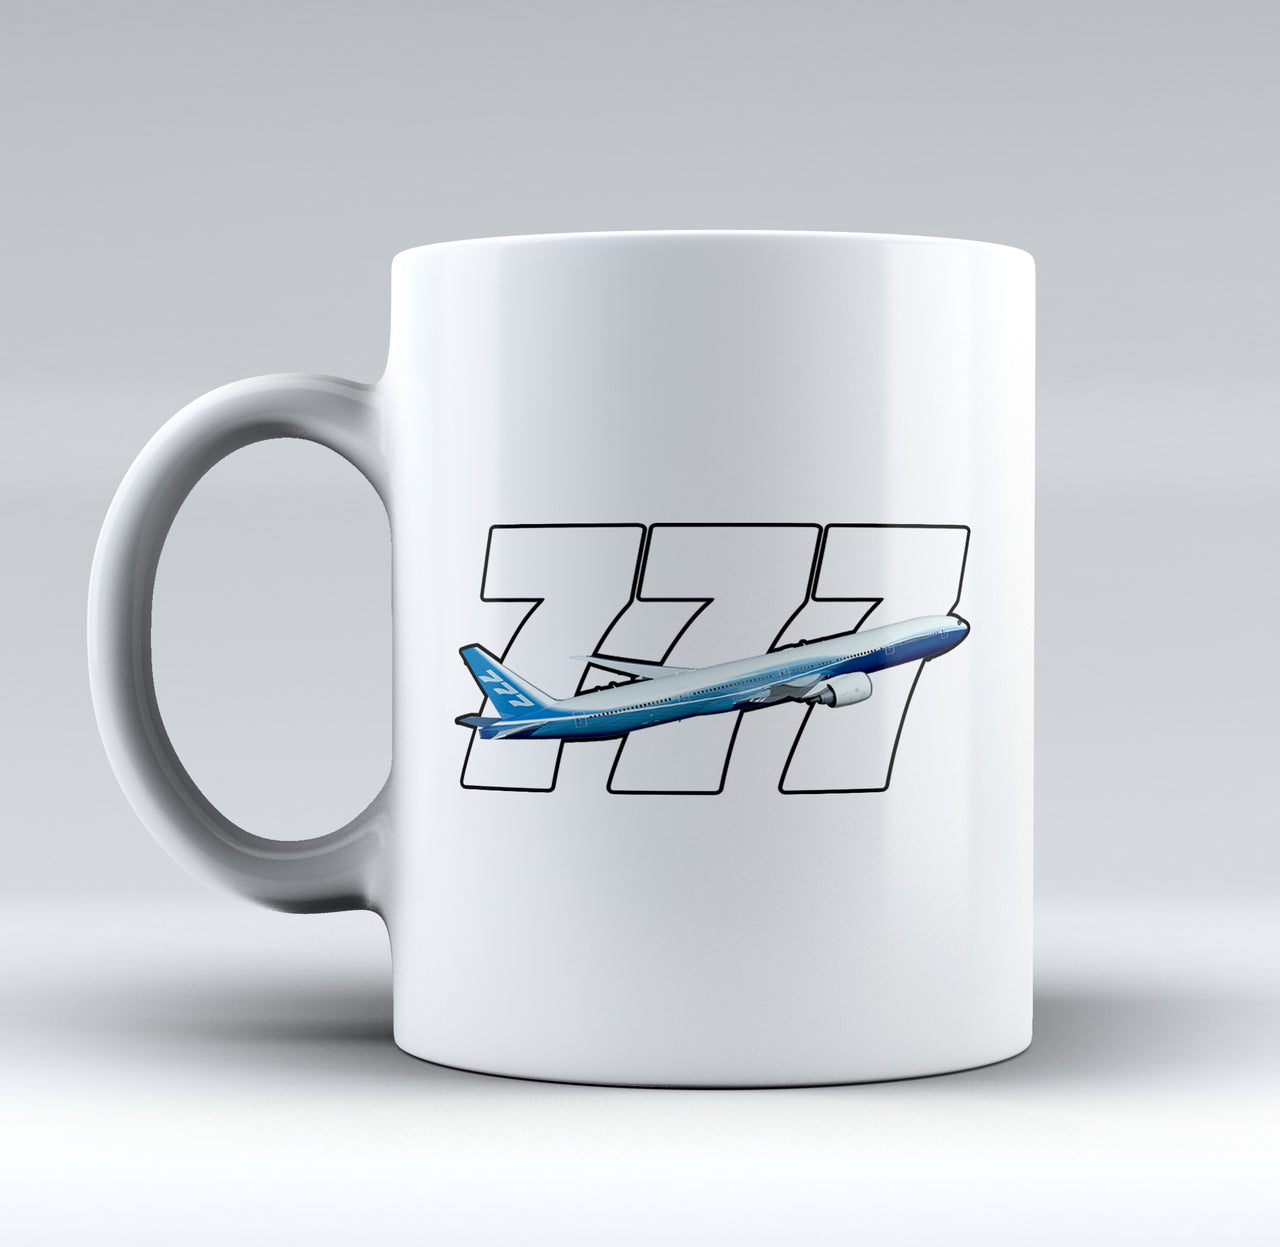 Super Boeing 777 Designed Mugs